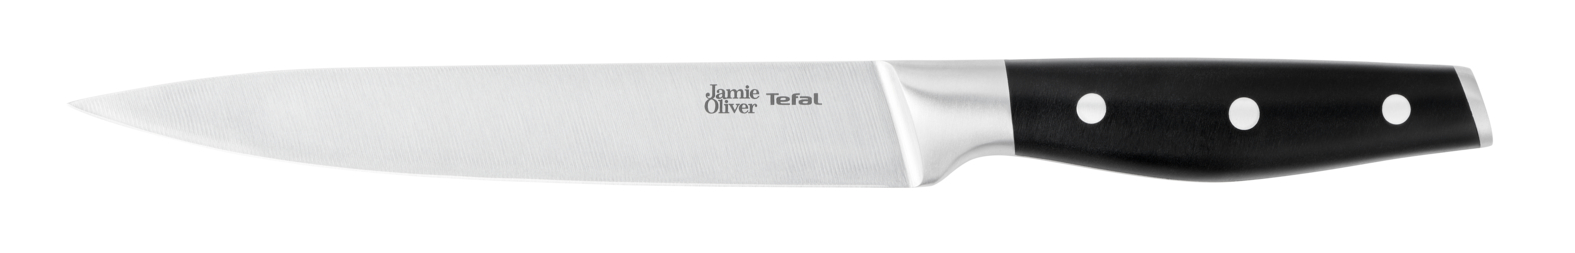 Универсальный нож Jamie Oliver 20 cм K2670244 универсальный нож jamie oliver 20 cм k2670244